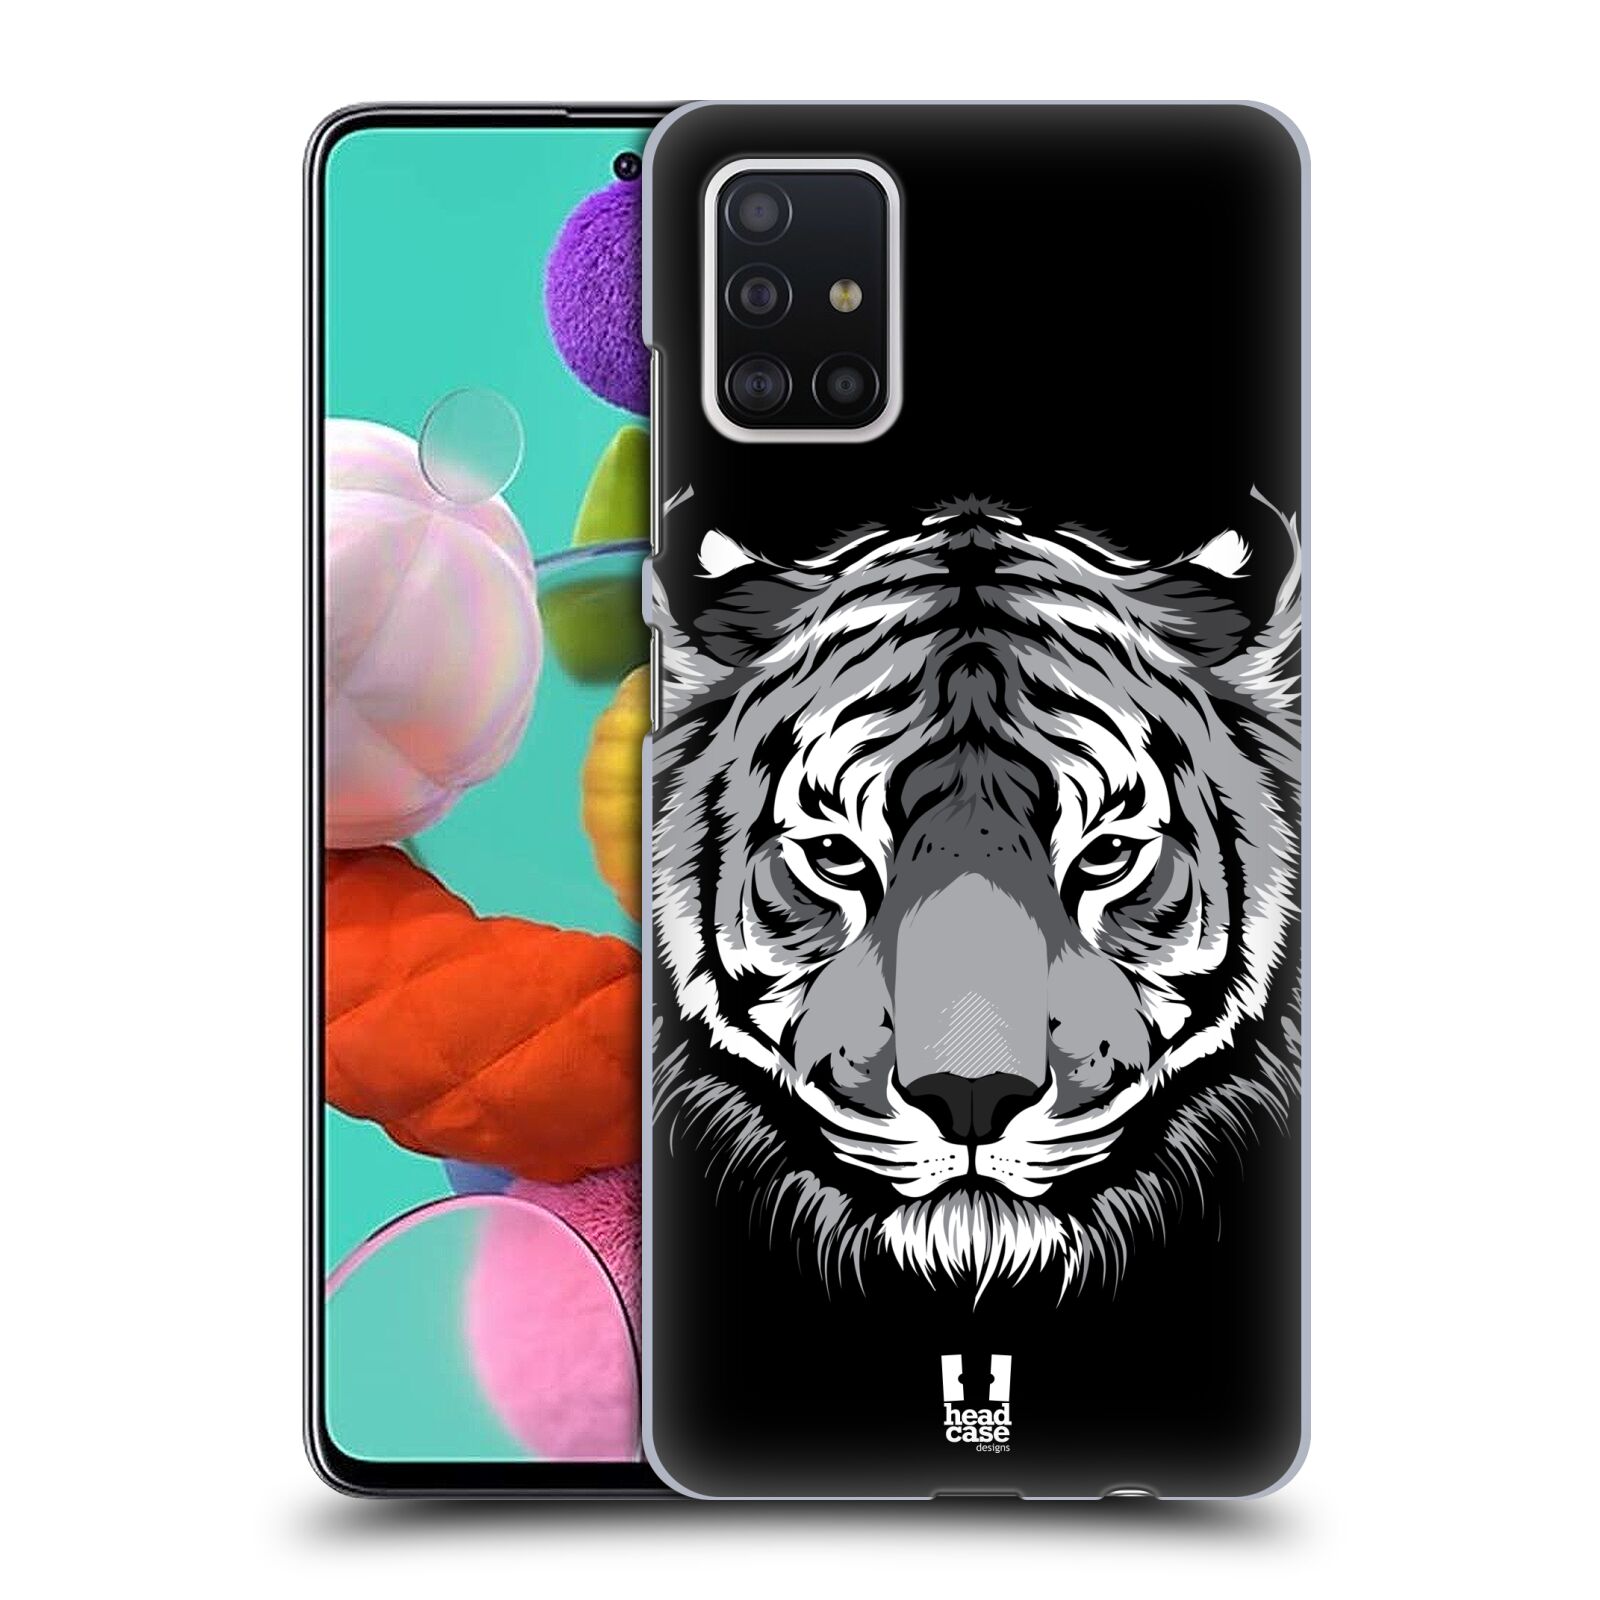 Pouzdro na mobil Samsung Galaxy A51 - HEAD CASE - vzor Zvíře kreslená tvář 2 tygr